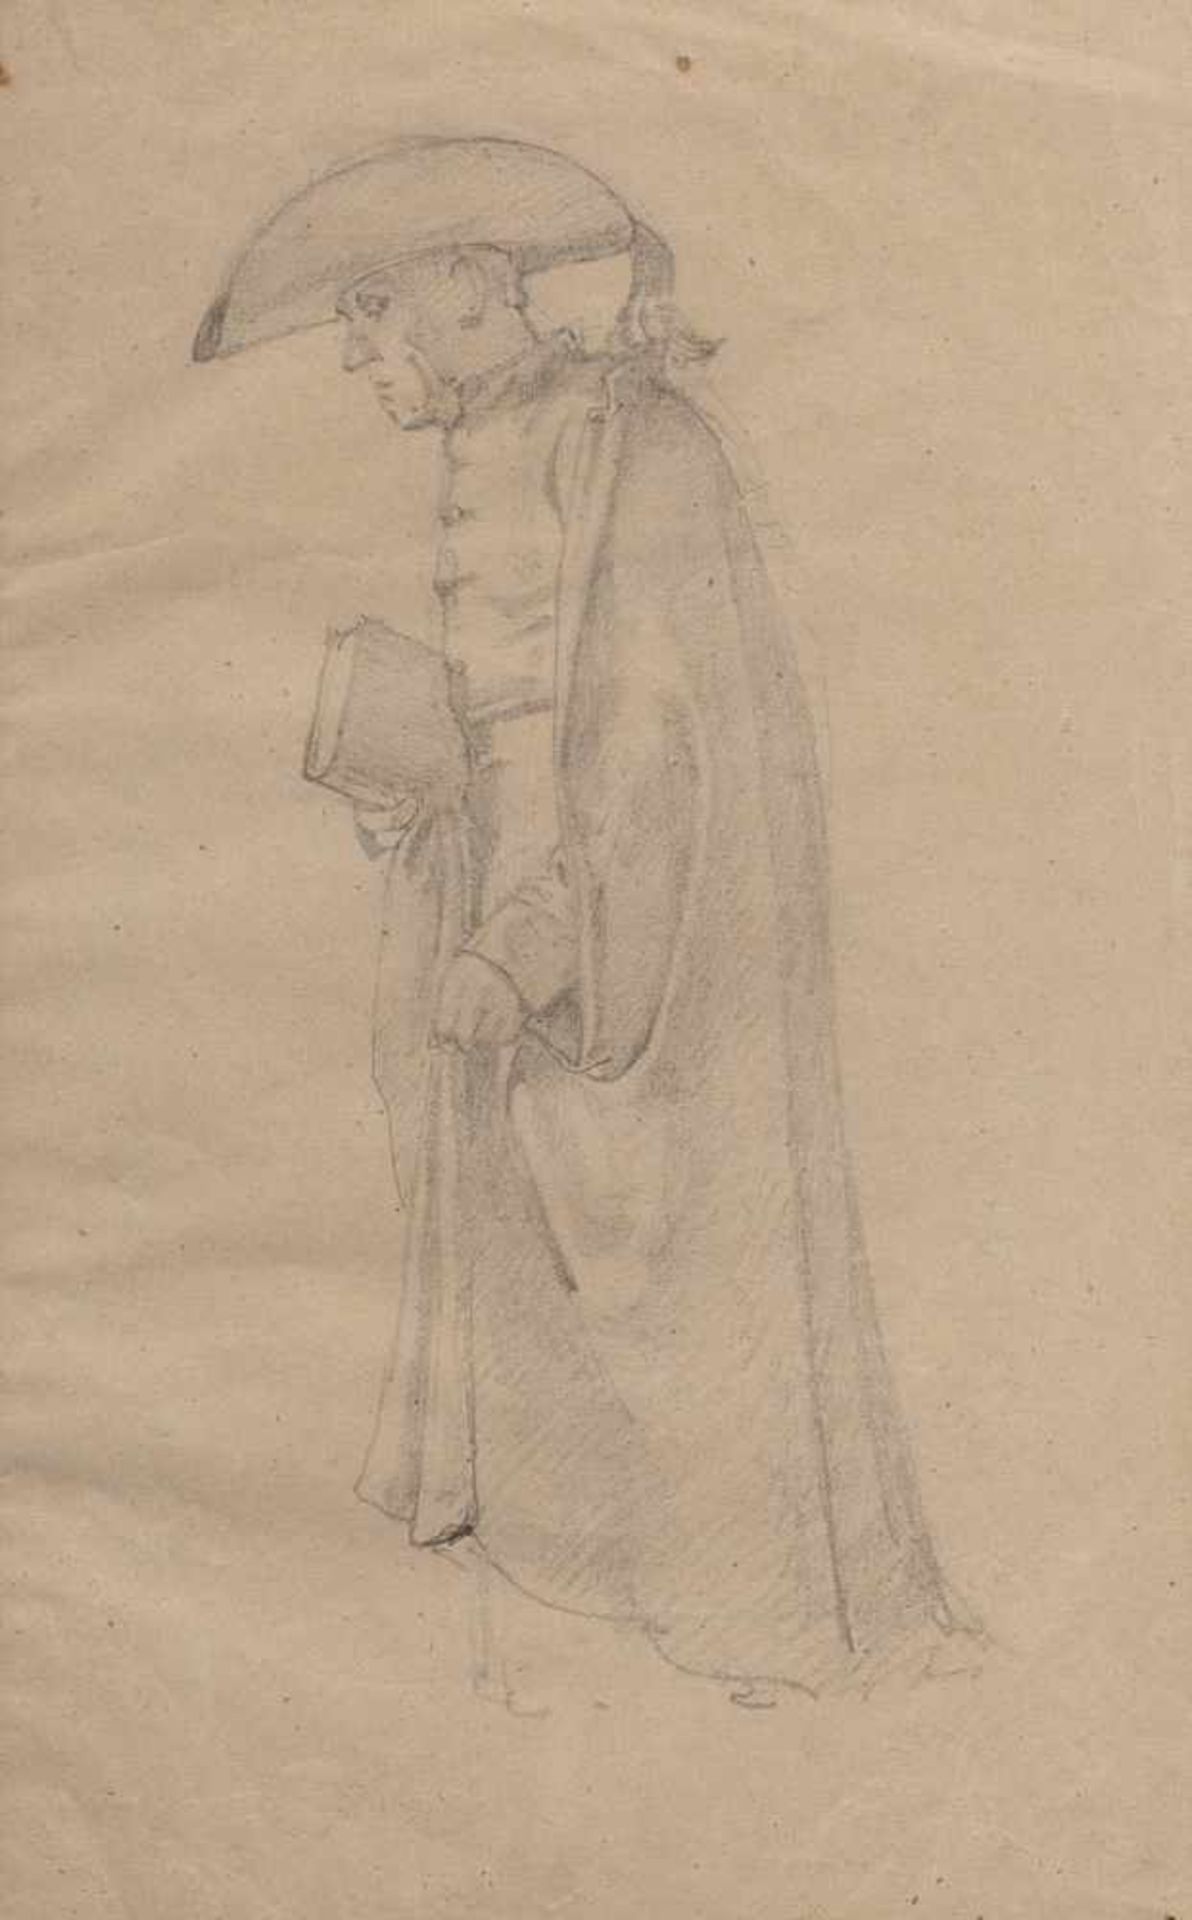 Spitzweg, CarlMünchen 1808 - 188535 x 21 cm,o.R.Studie eines Paters. Bleistift/Papier, verso weitere